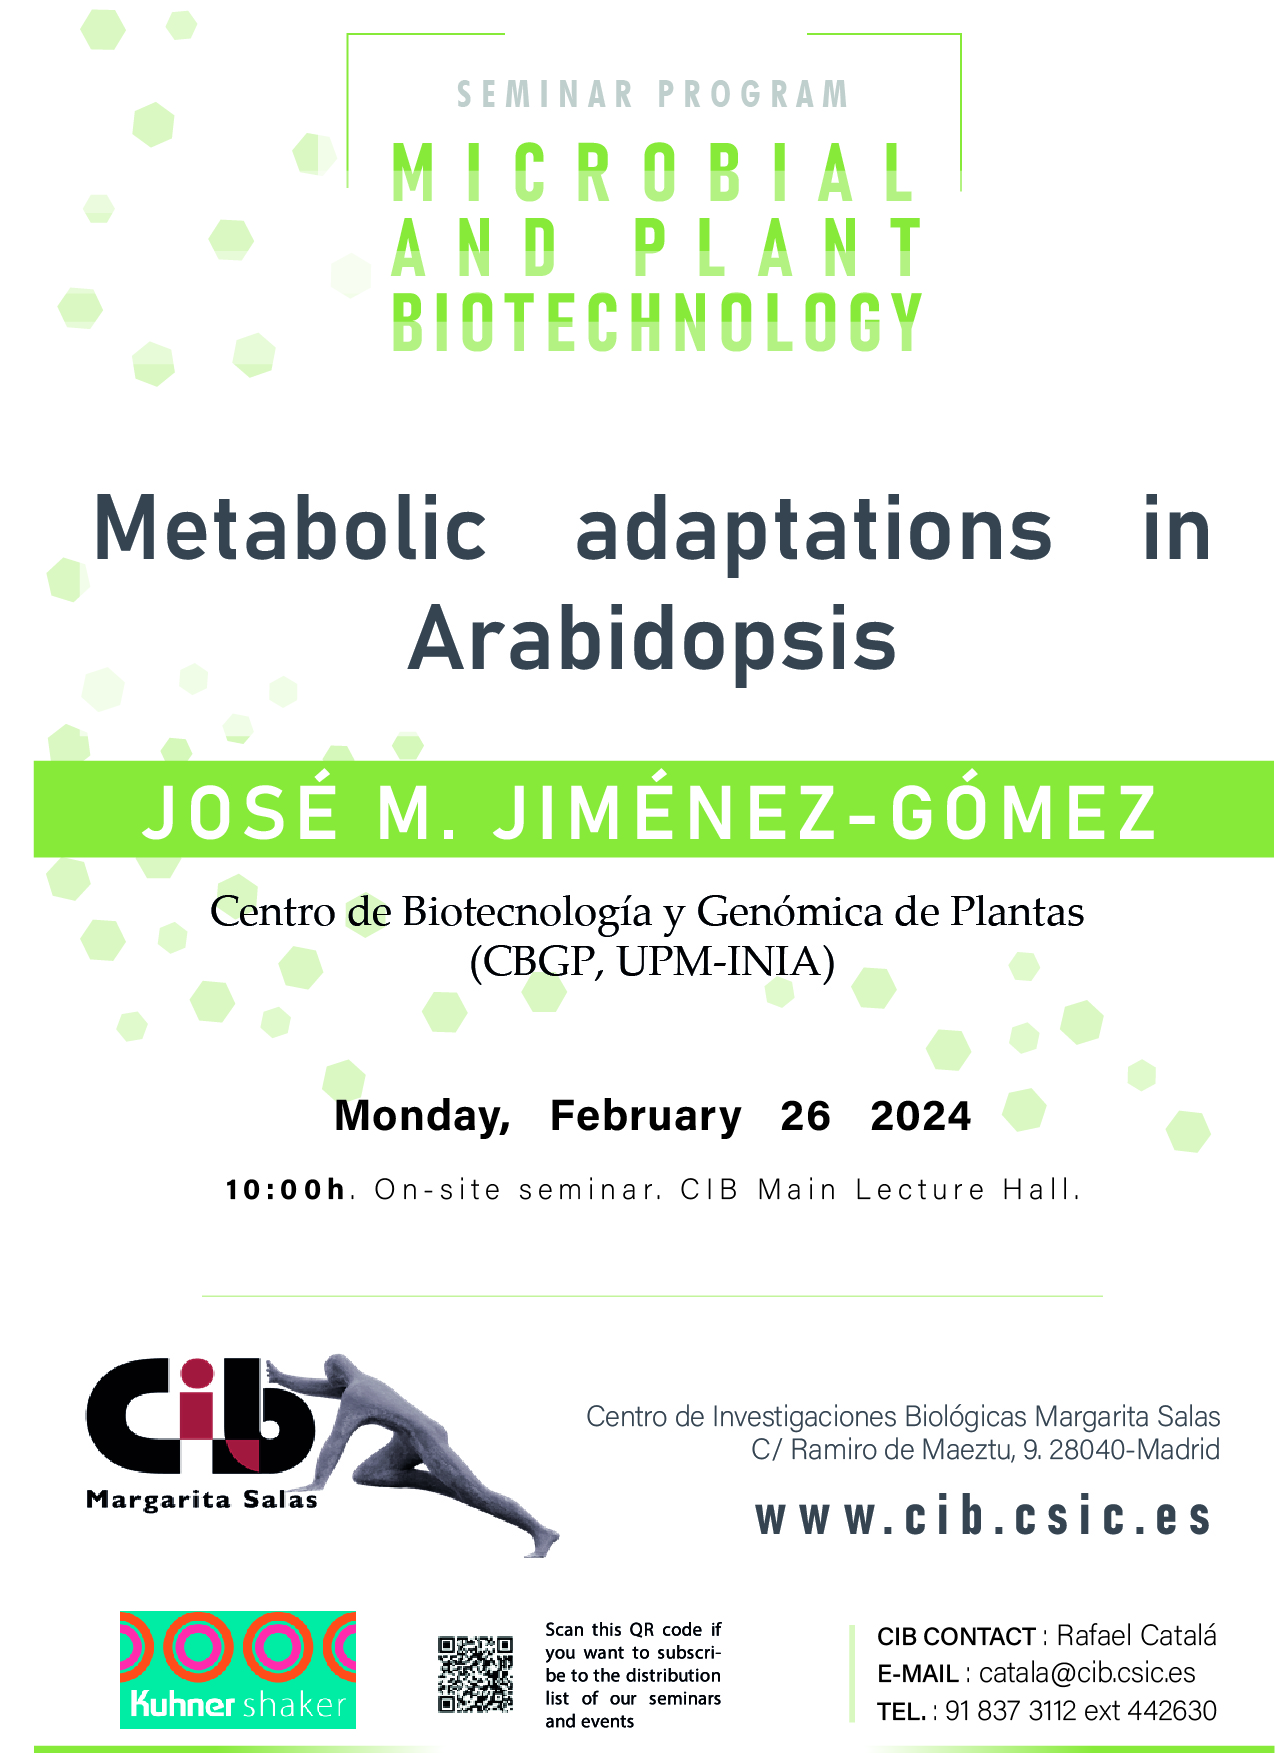 Cartel del seminario de José M. Jiménez-Gómez del 26 de febrero de 2024